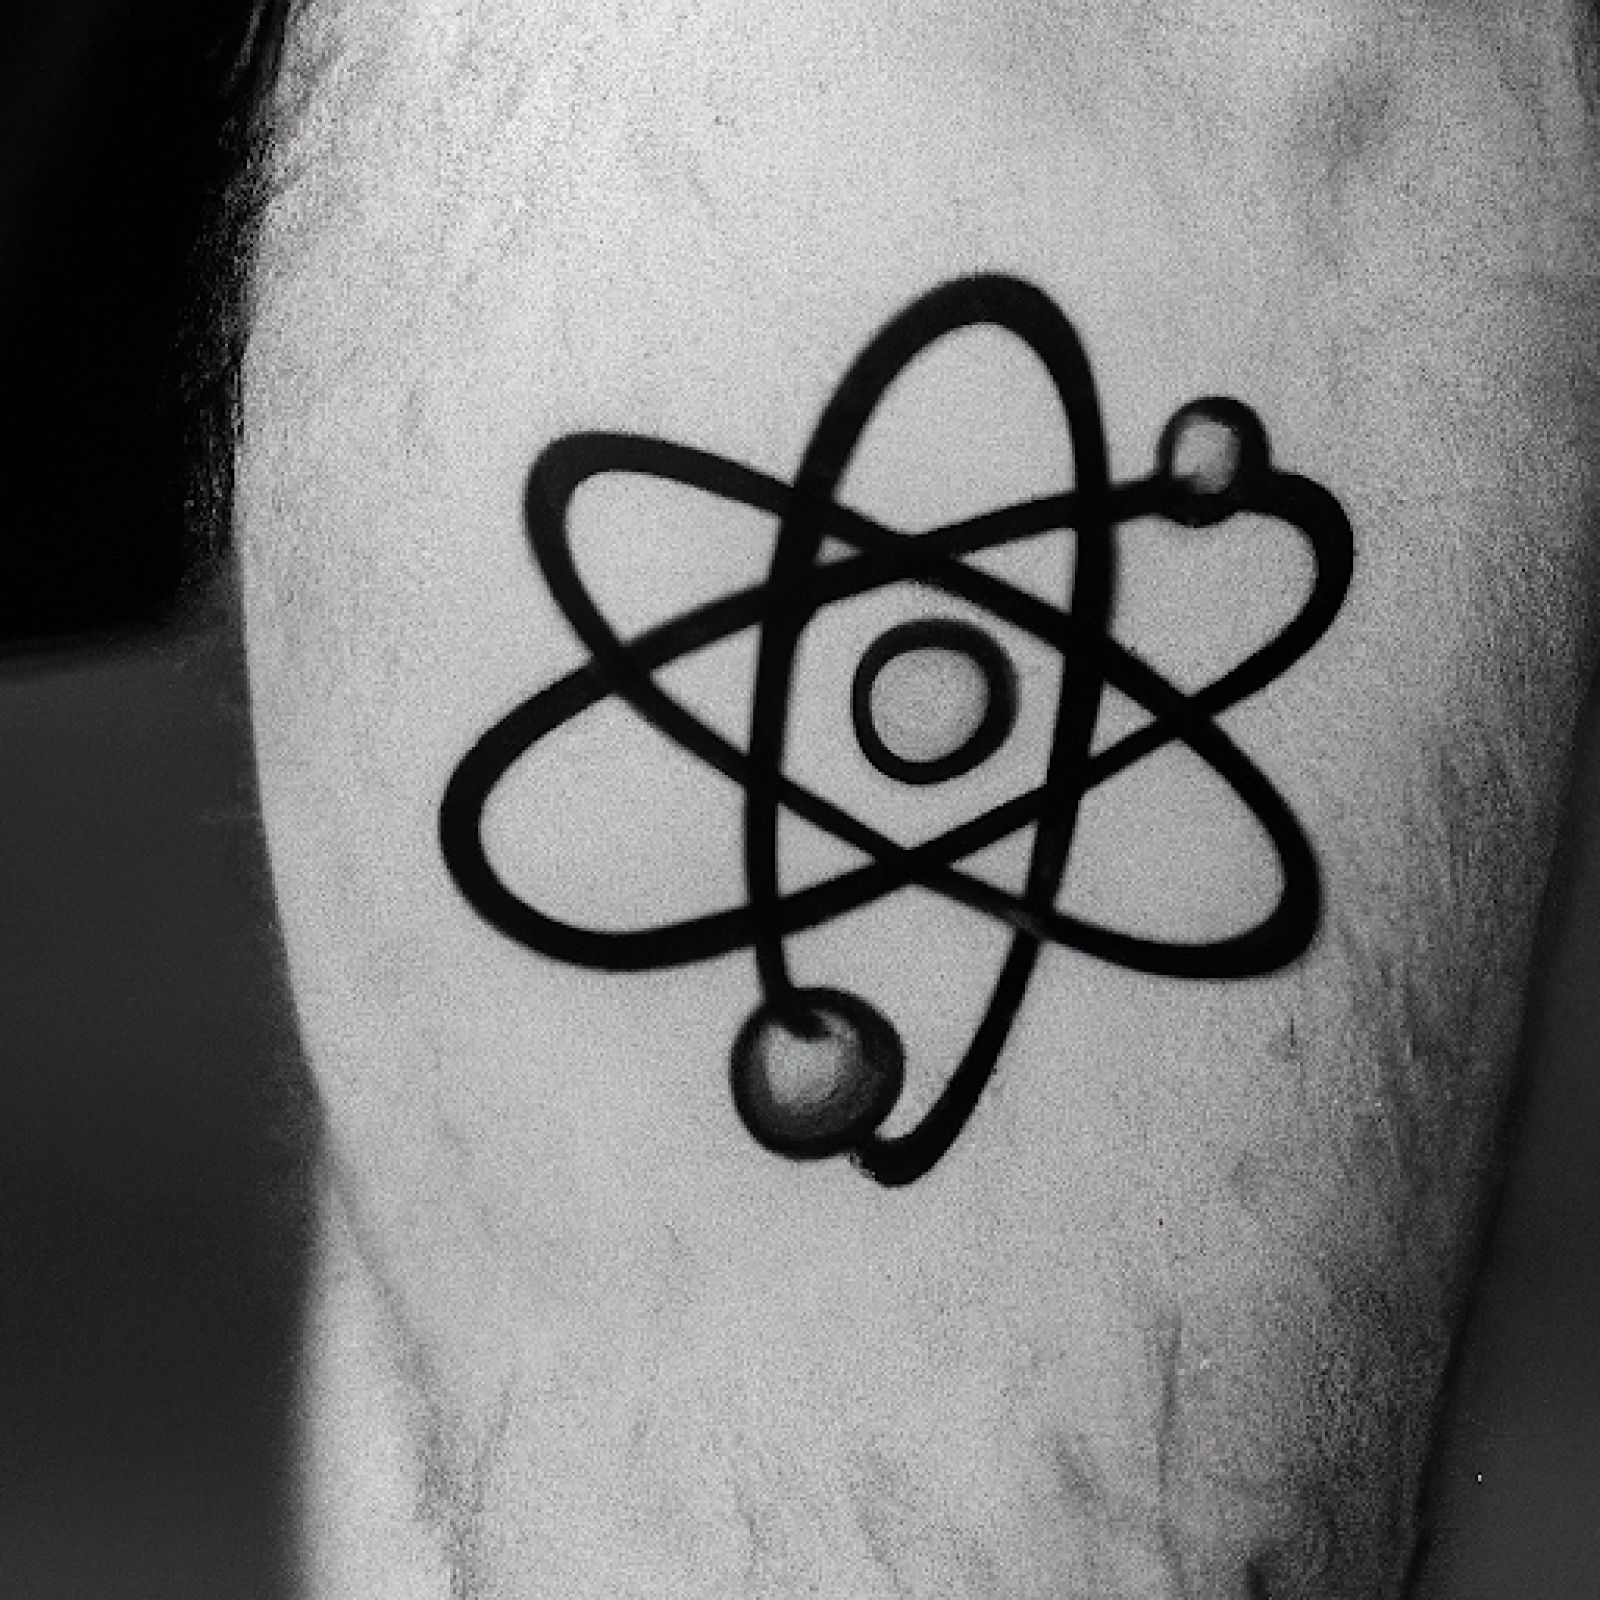 Atom tattoo on calf for men